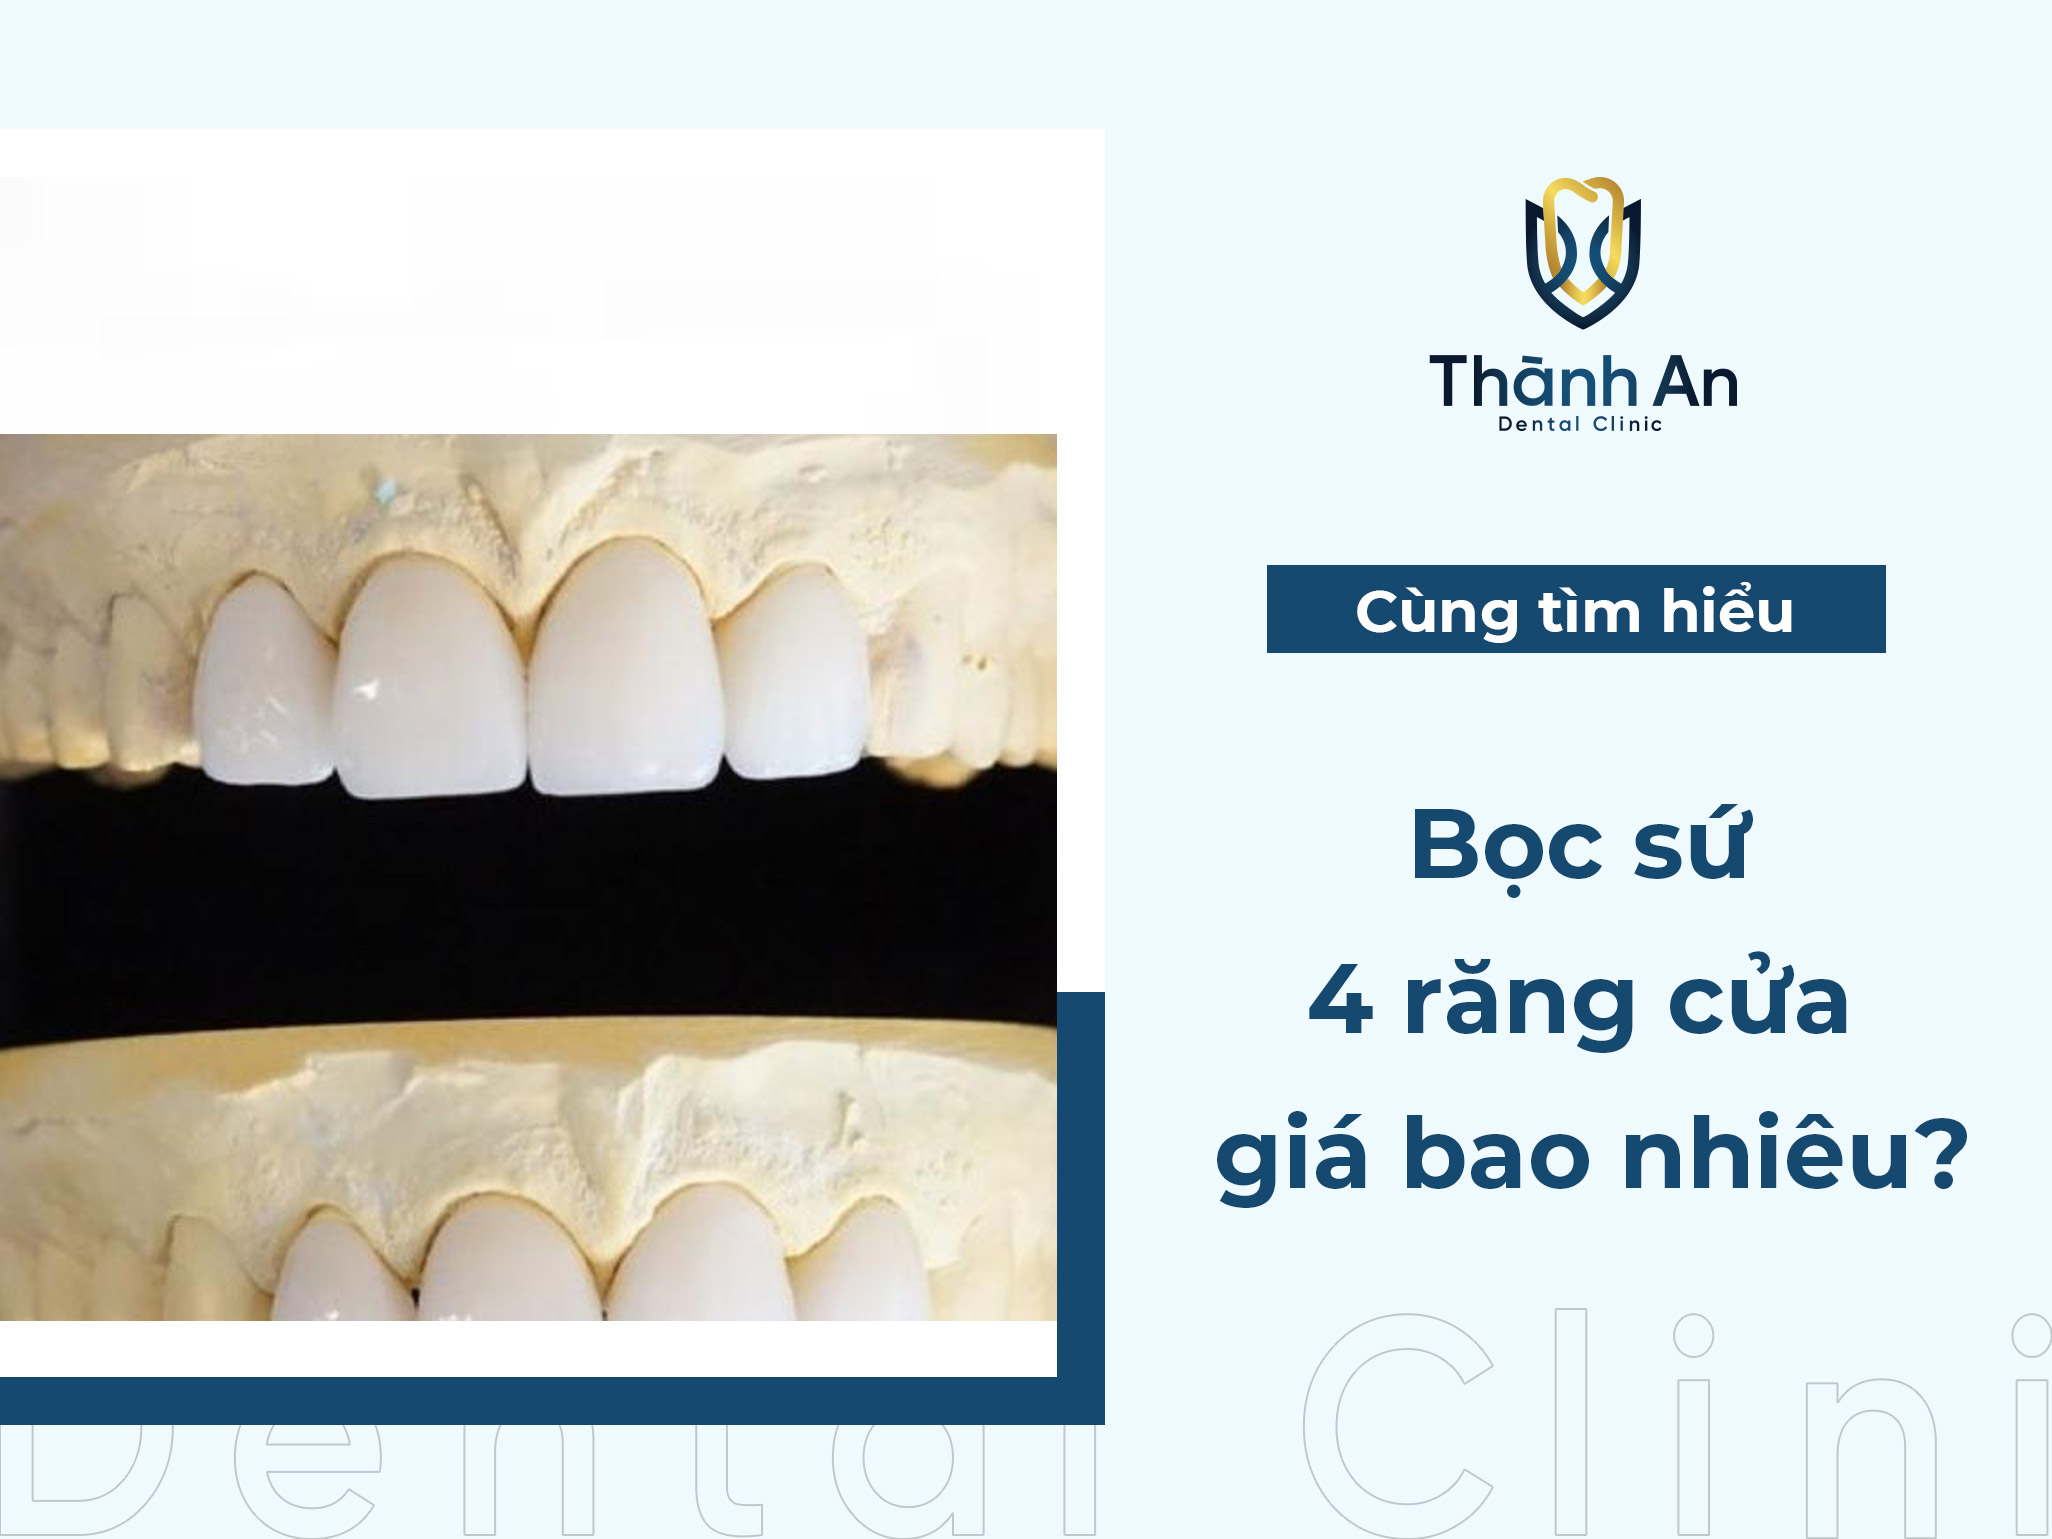 Bọc sứ 4 răng cửa giá bao nhiêu? Nên chọn loại nào thích hợp?